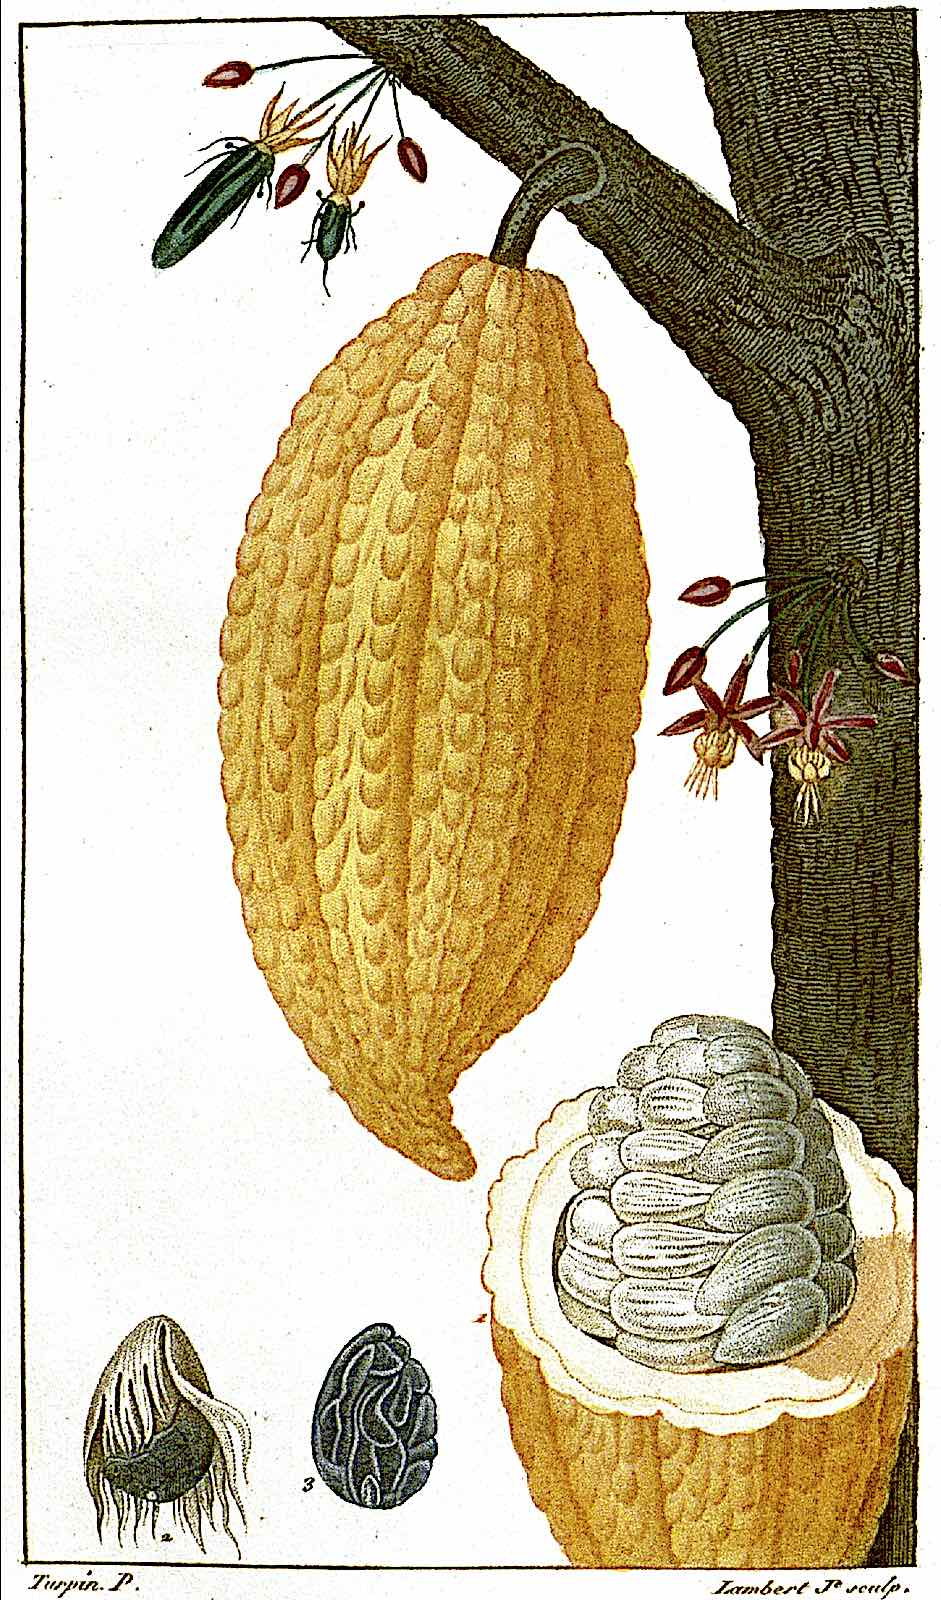 a Pierre Jean François illustration of a cocao plant